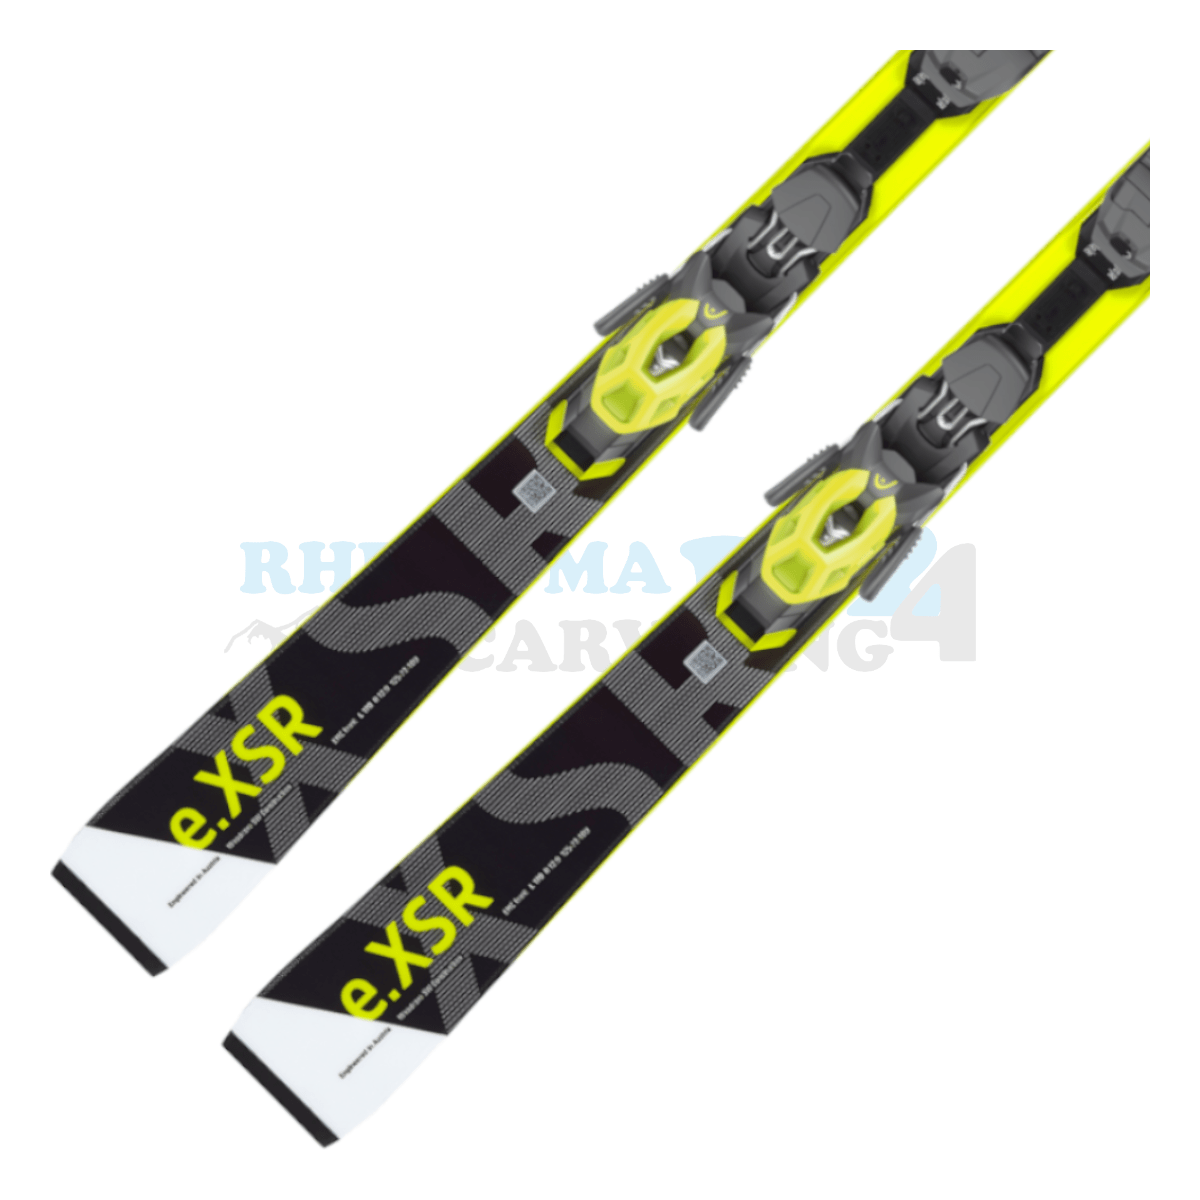 Head Rebels-eXSR mit Platte und Bindung, der Ski ist in der Farbe weiß-schwarz-gelb, die Ansicht des unteren Teils des Skis